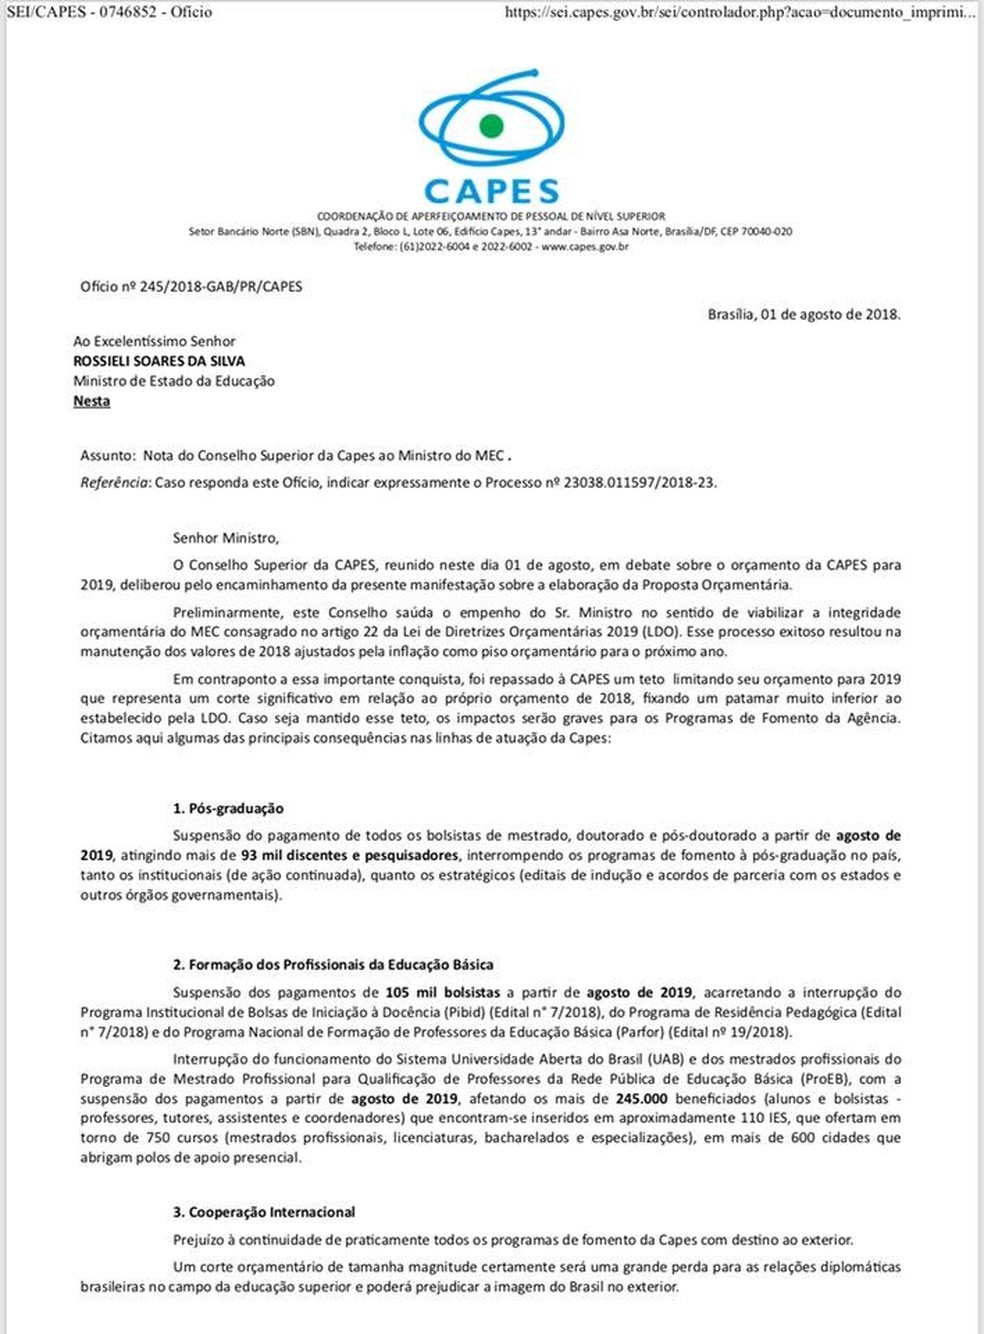 Ofício do Conselho da Capes pede a manutenção da verba prevista atualmente para a coordenação na LDO 2019 (Foto: Reprodução)